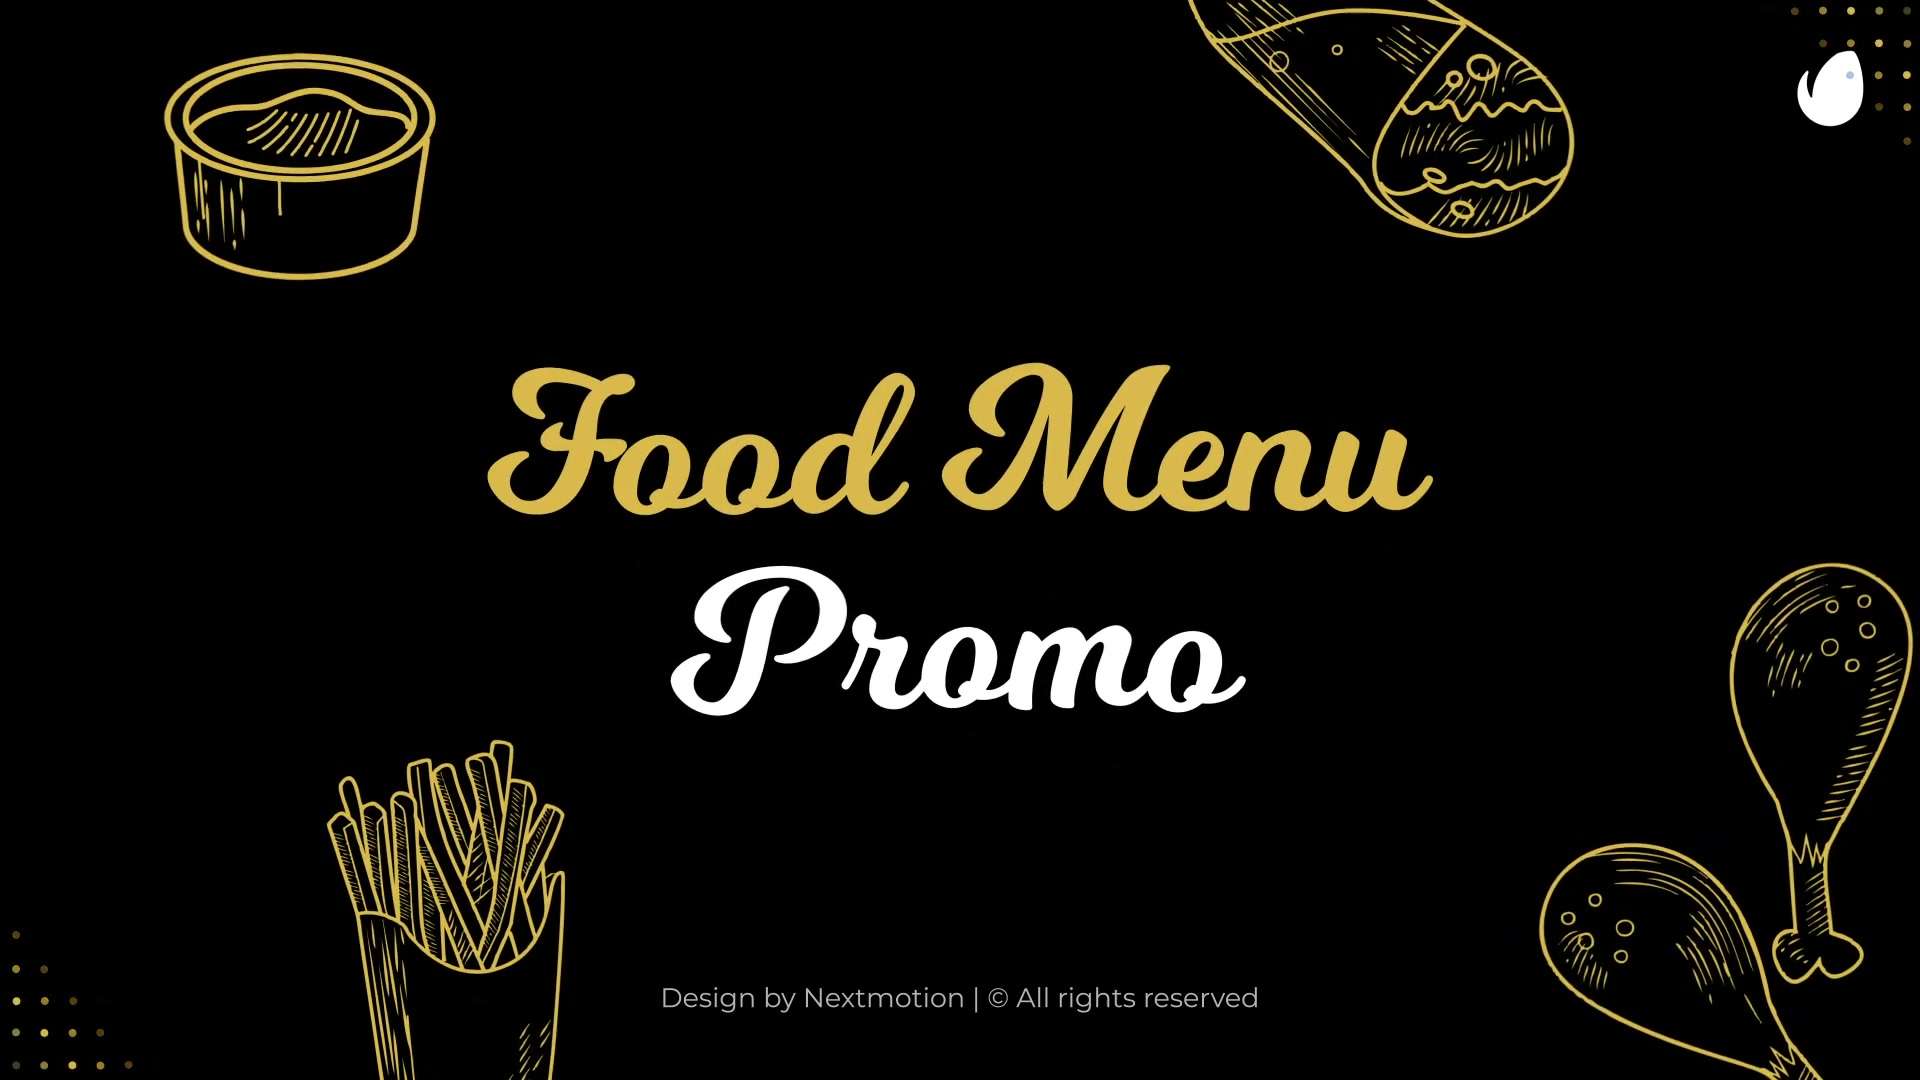 AE模板 | 美食快餐西汉堡餐厅禽物菜单促销介绍业务宣传开场片头动画